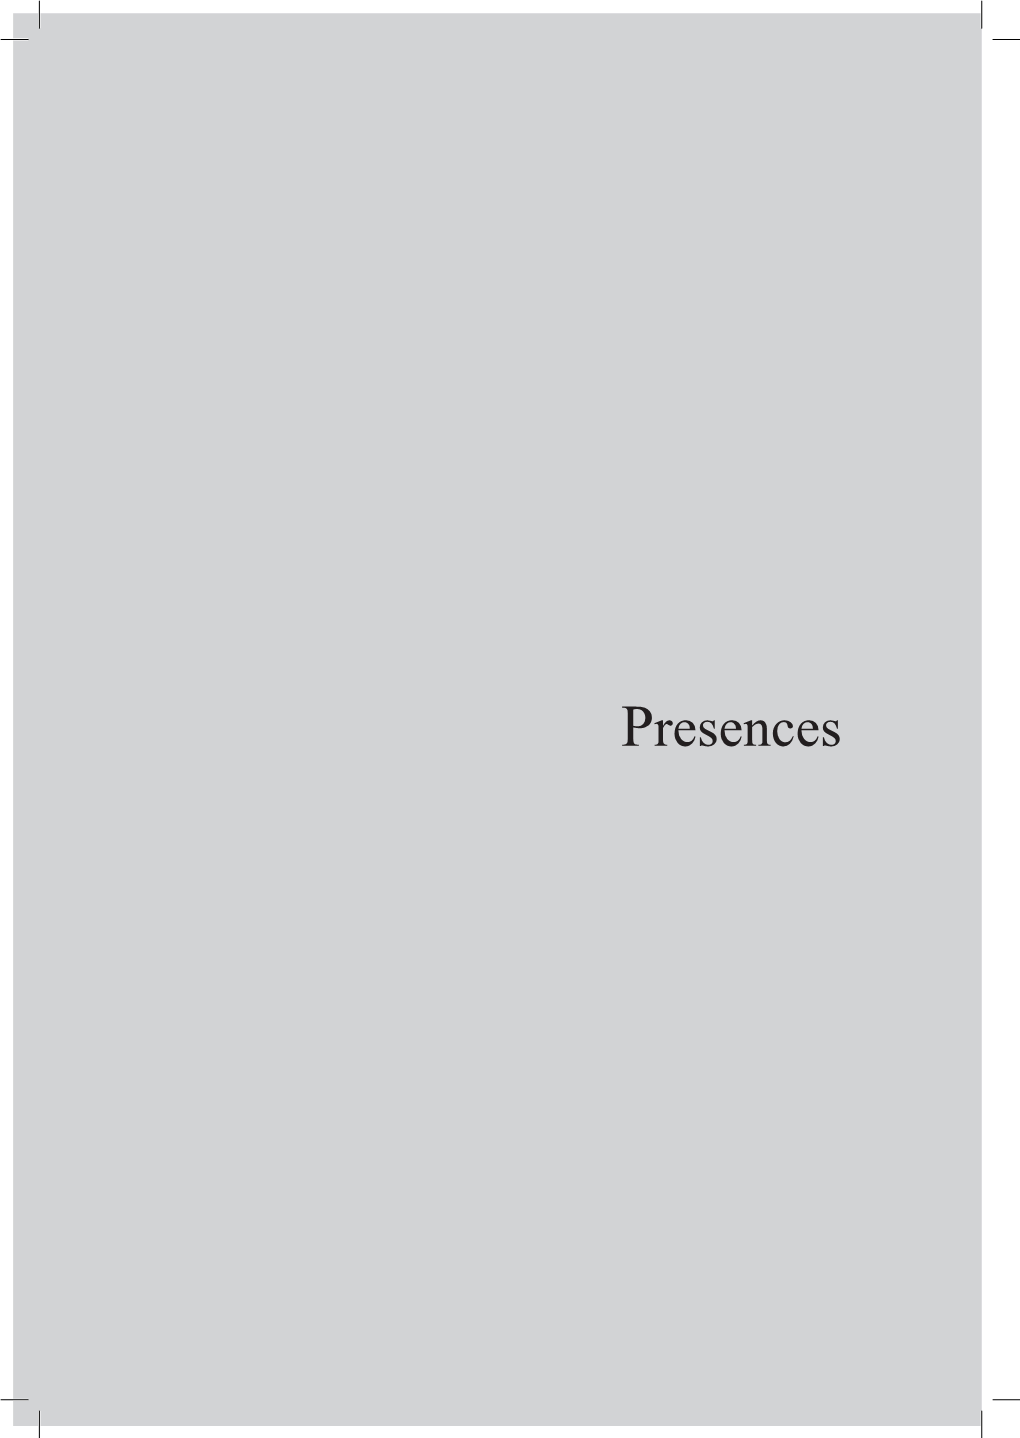 Presences Joaquim Nabuco, the Memoirist1